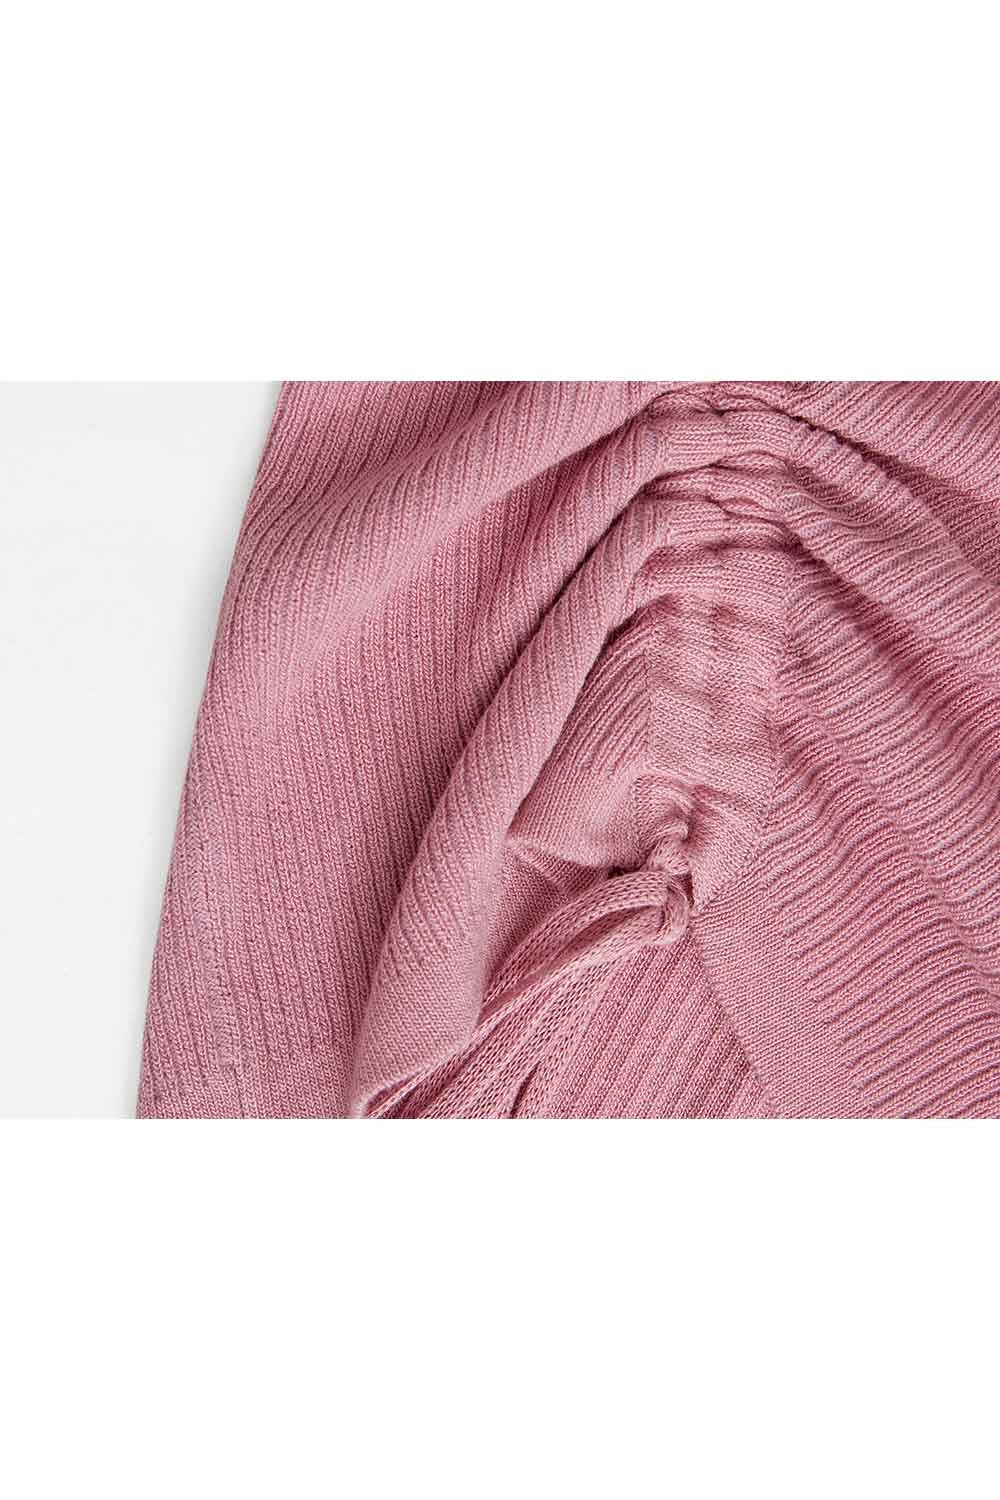 비대칭 컷아웃과 사이드 타이 디테일이 돋보이는 여성용 시크 니트 스웨터